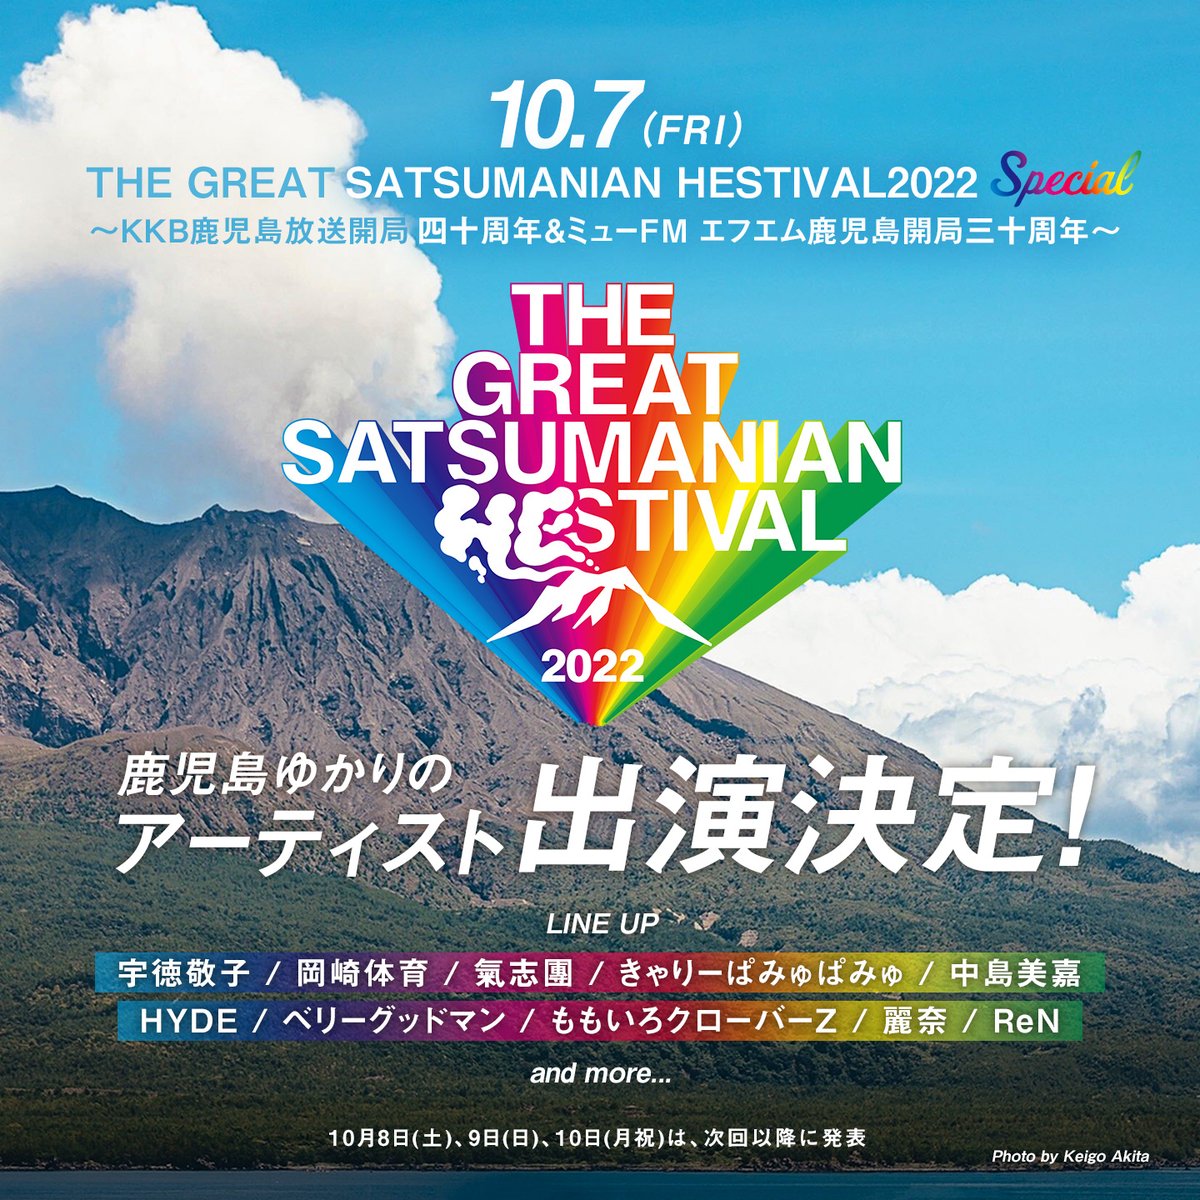 THE GREAT SATSUMANIAN HESTIVAL 2022【きゃりーぱみゅぱみゅ】